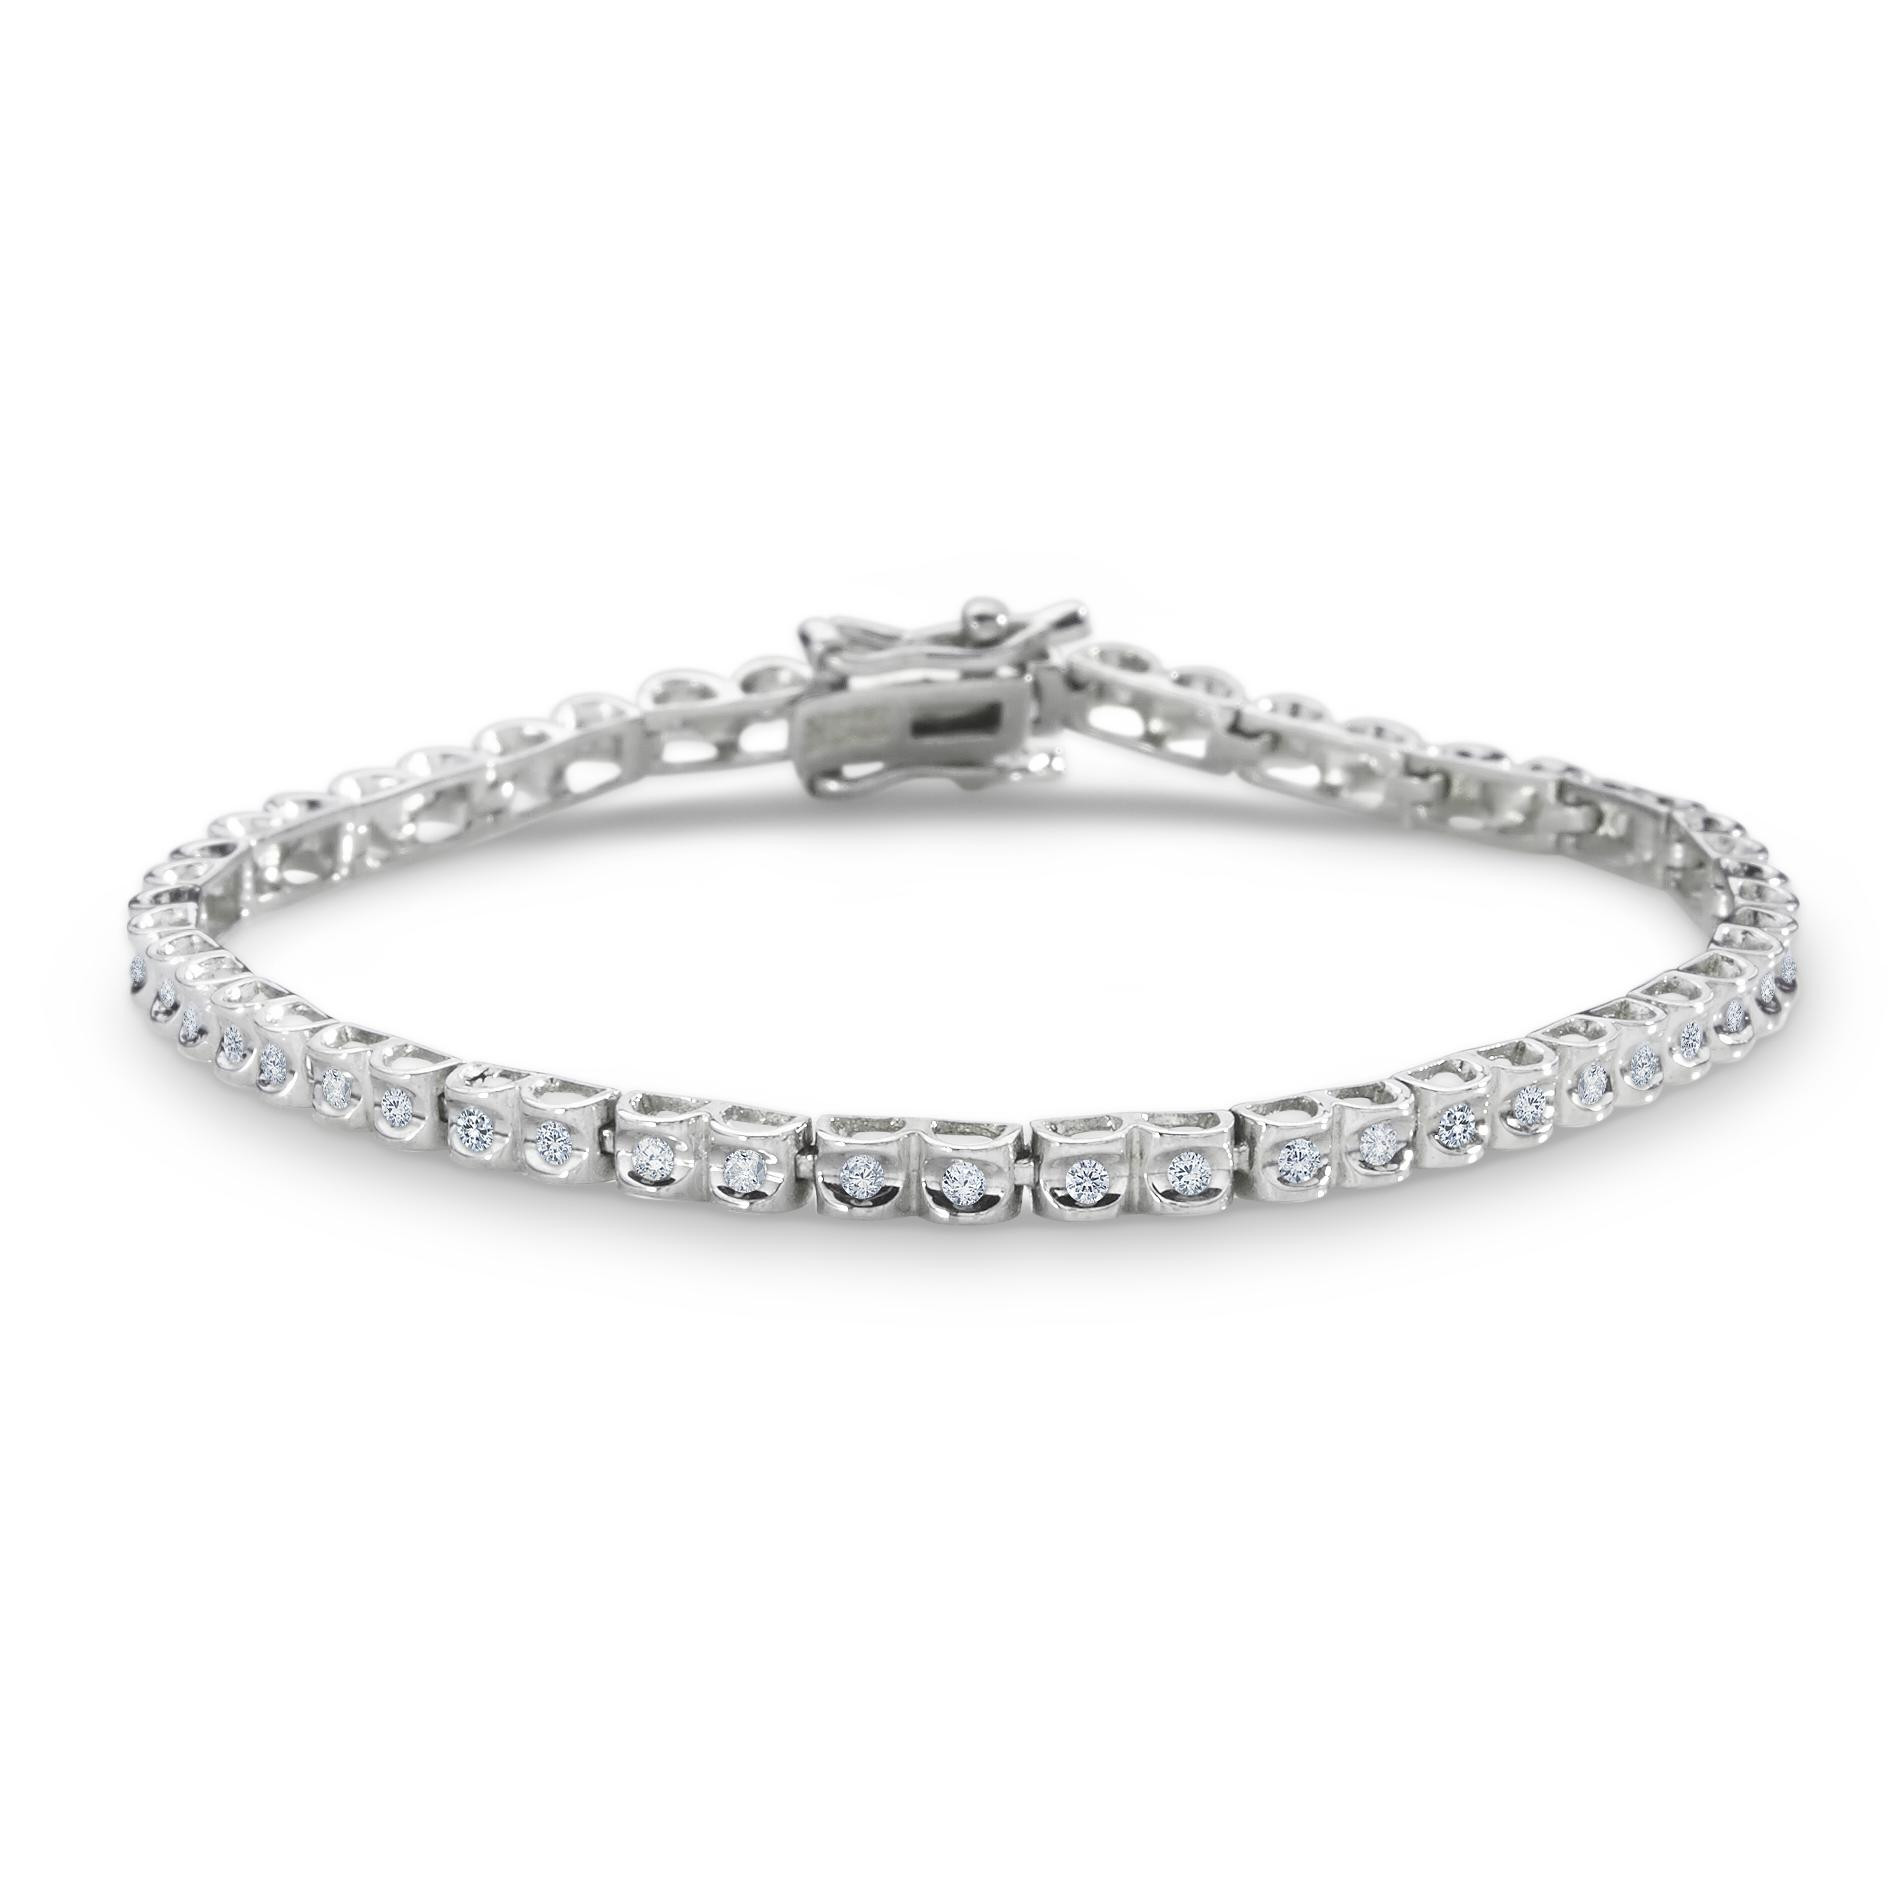 Kmart Jewelry Bracelets
 1 2 Cttw Diamond Sterling Silver Tennis Bracelet